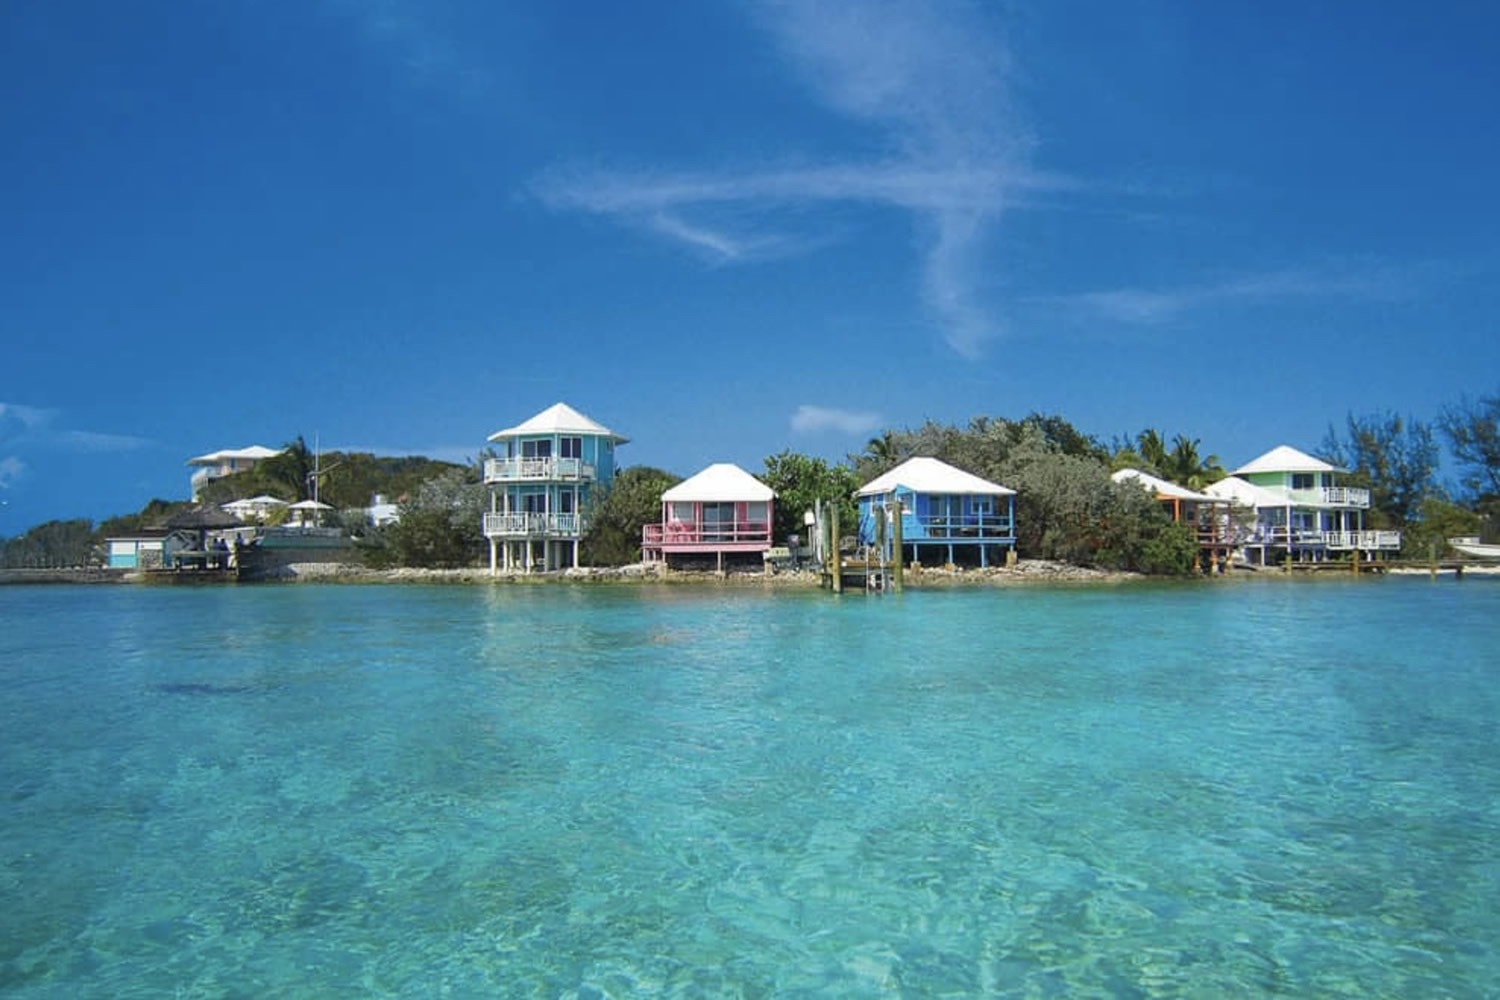 Staniel Cay, Exuma Cays the Bahamas. Staniel Cay Yacht Club